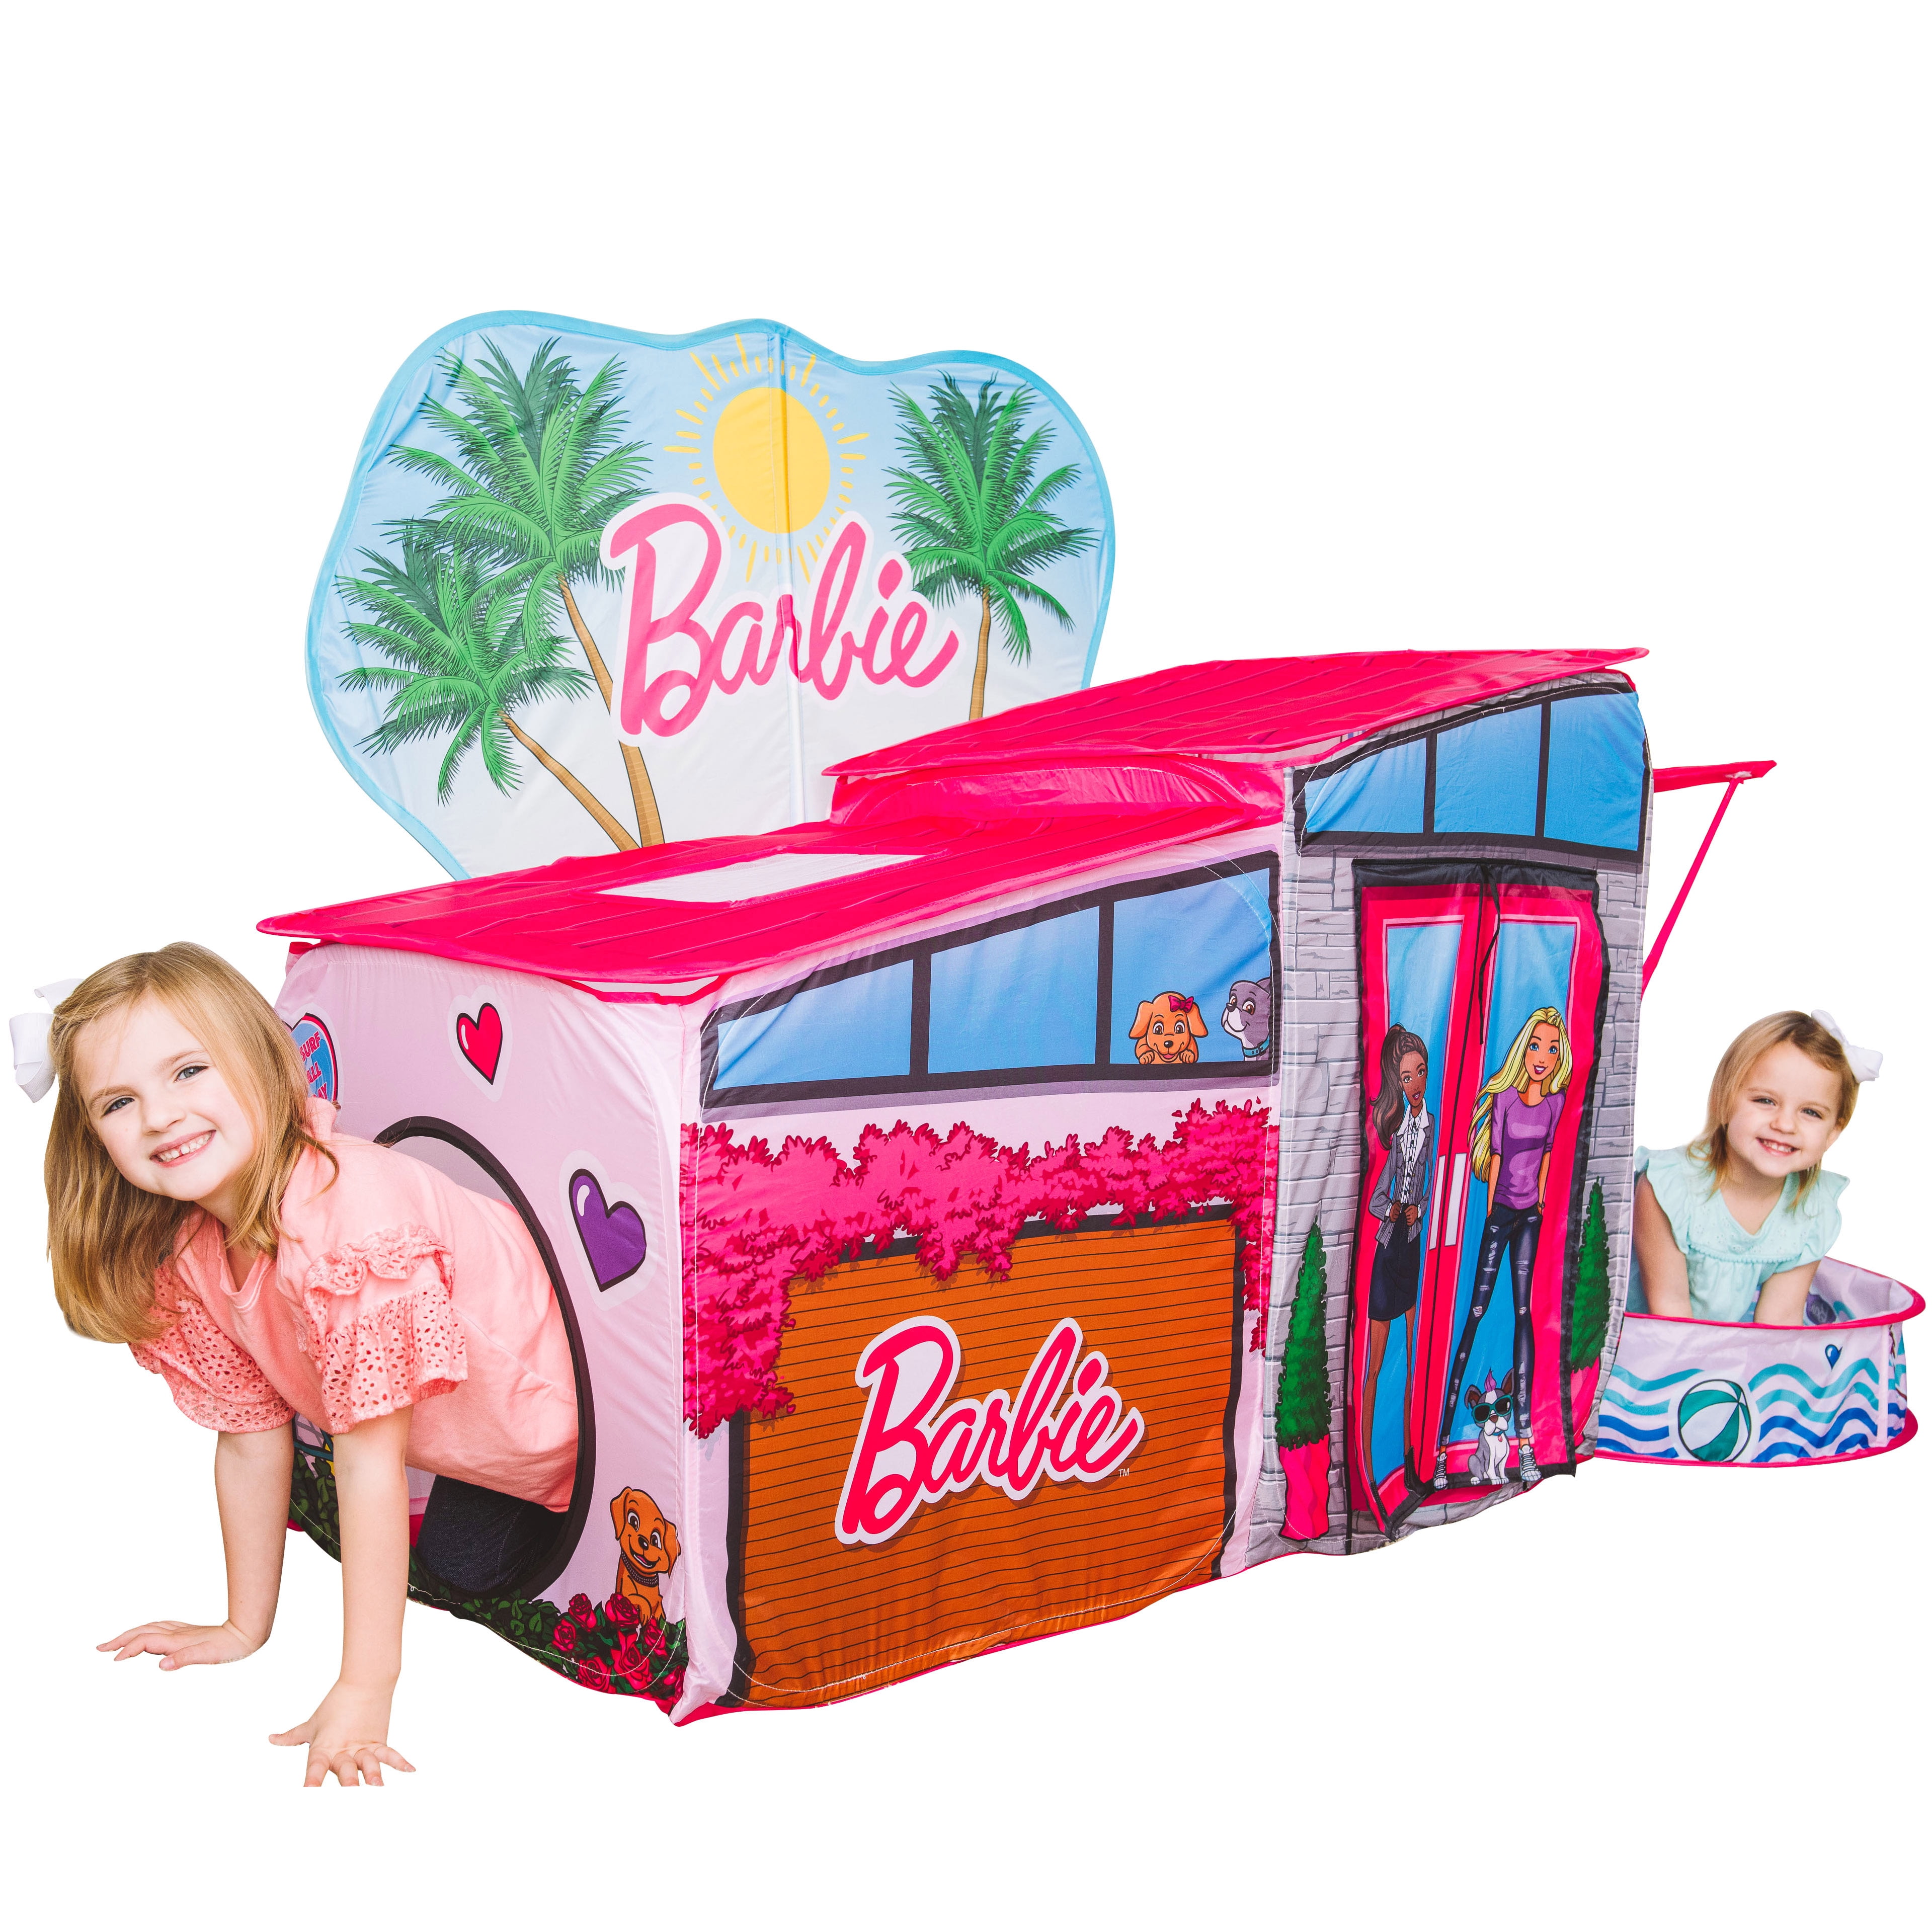 Kids Pop-up Play Tent Children Toy Playhouse Outdoor Indoor Game Accessories 